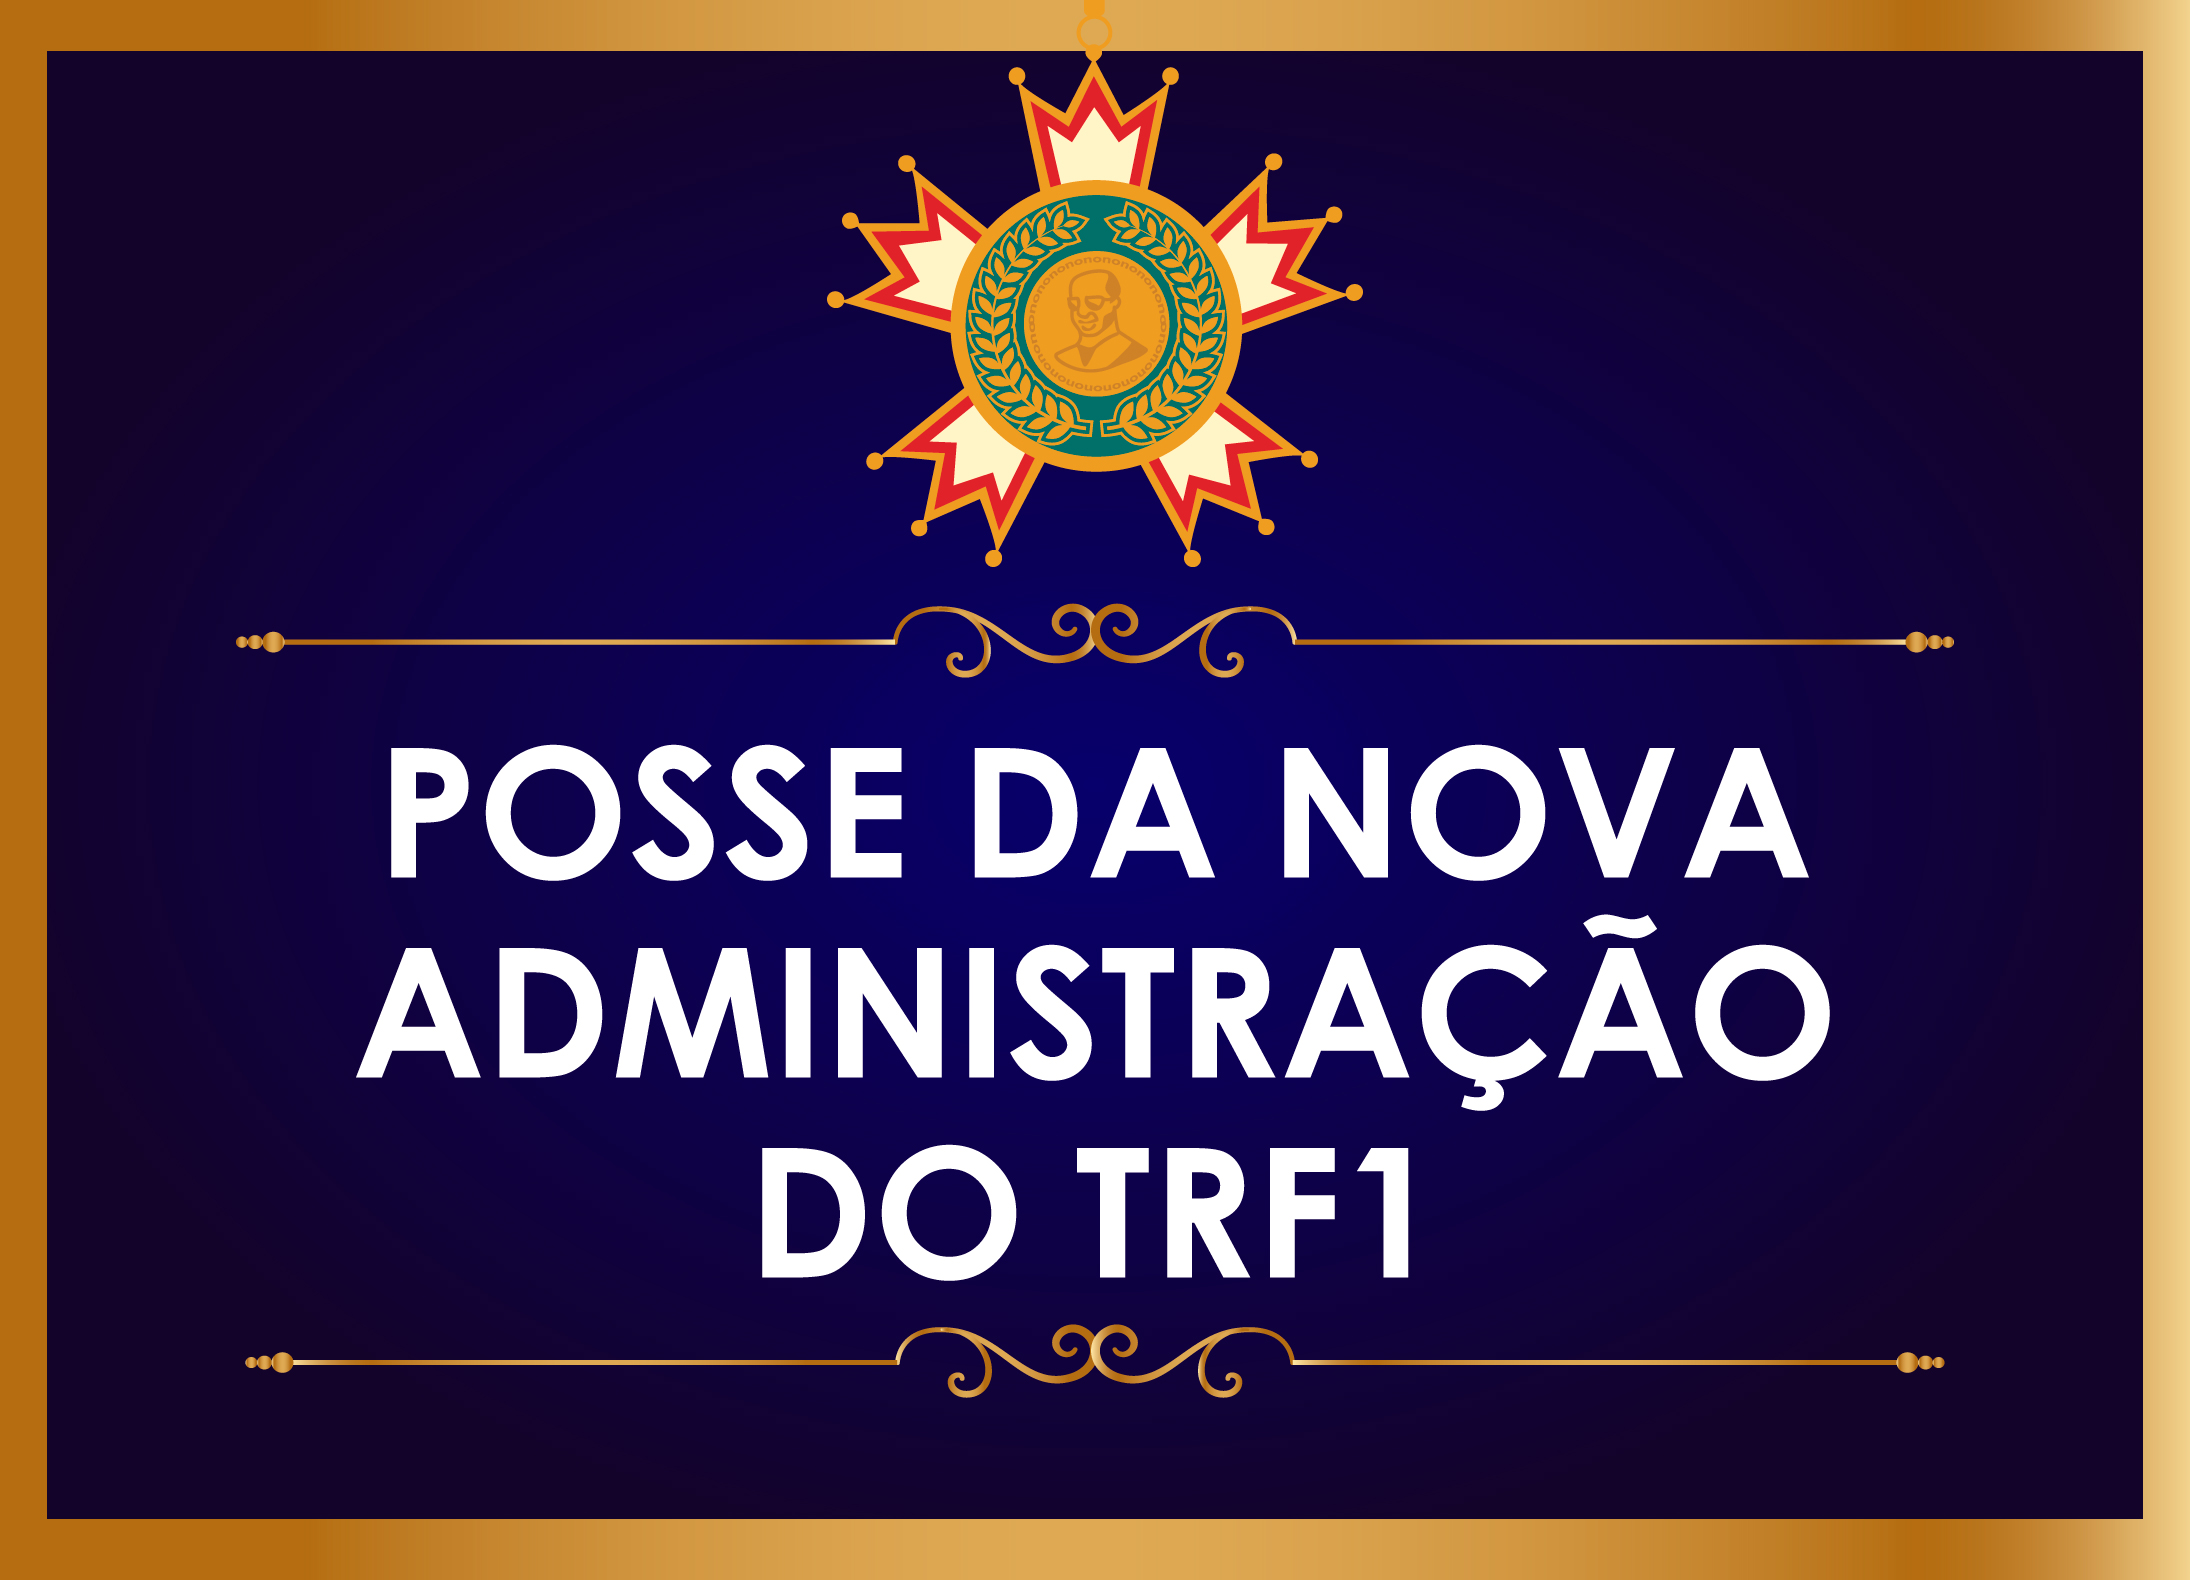 INSTITUCIONAL: Novos dirigentes do TRF 1ª Região tomam posse hoje - 17 de abril